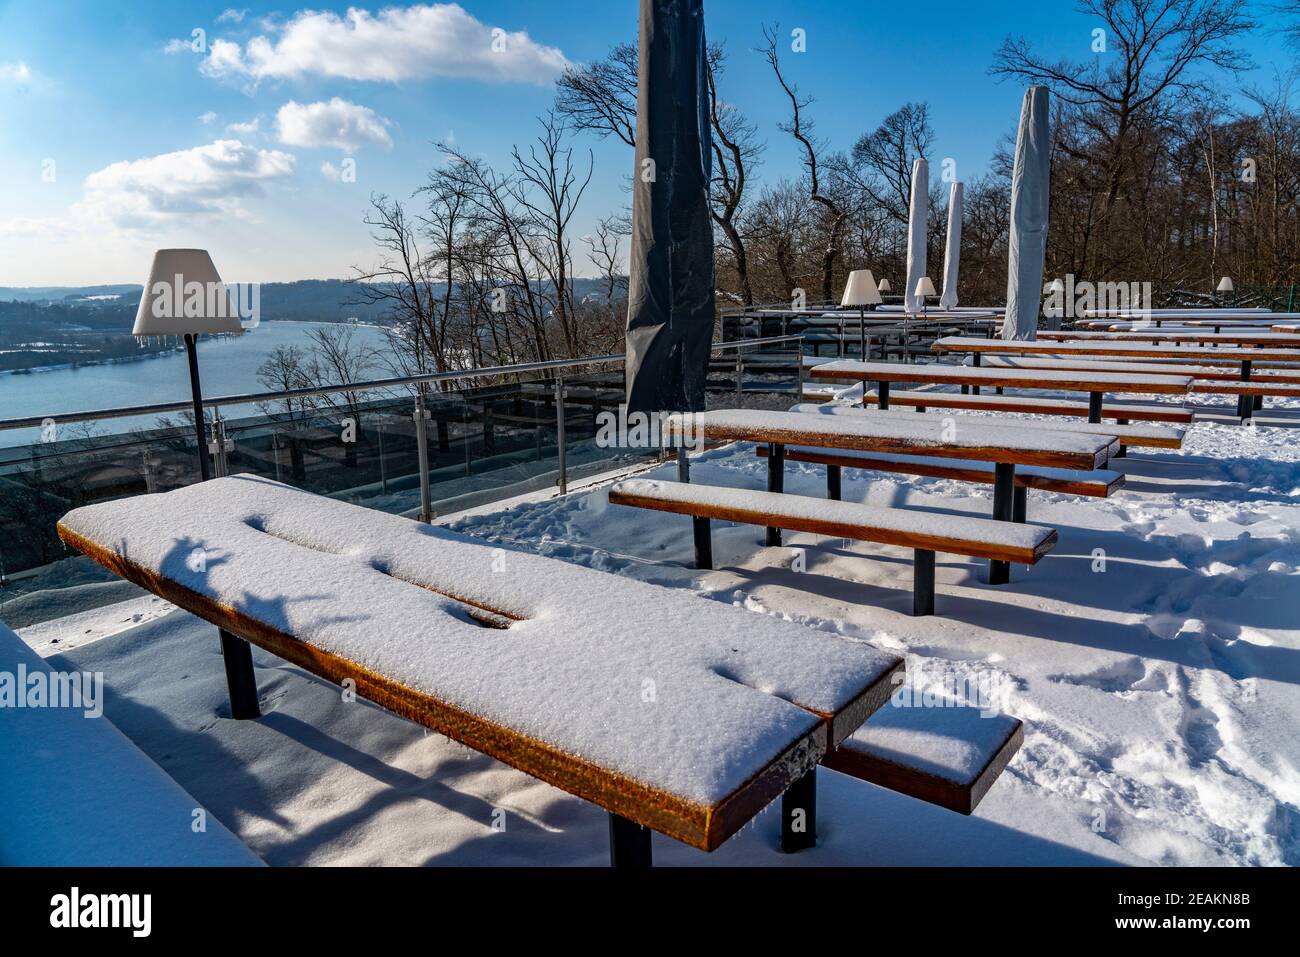 Winter, snowy landscape, restaurant, beer garden terrace, Jagdhaus Schellenberg, with view of Lake Baldeney, Essen, NRW, Germany Stock Photo